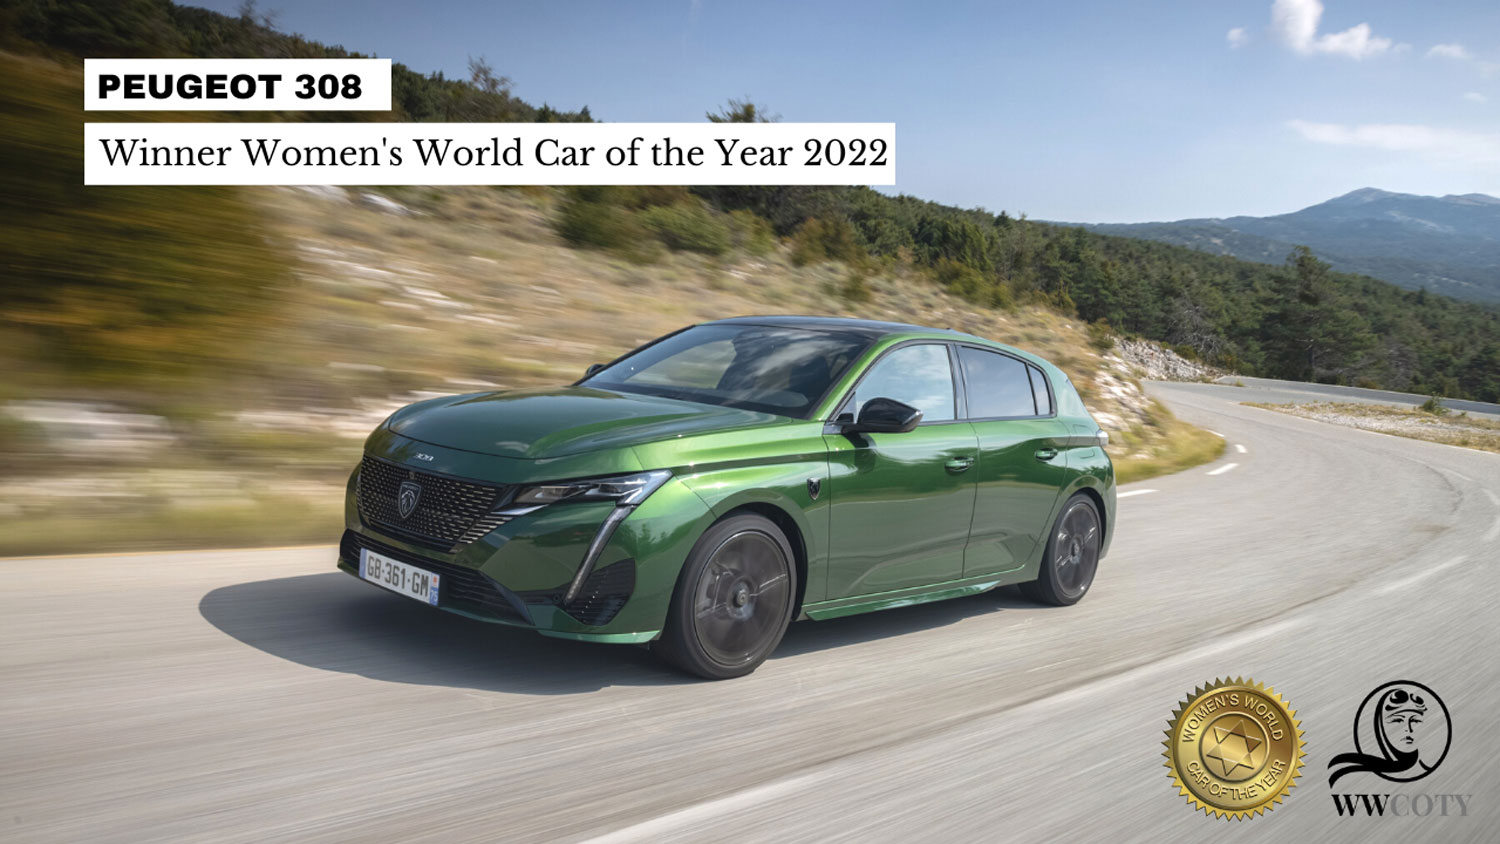 Ги освои женските срца: Новиот Peugeot 308 прогласен за „Женски светски автомобил на годината“ (WWCOTY) за 2022 година